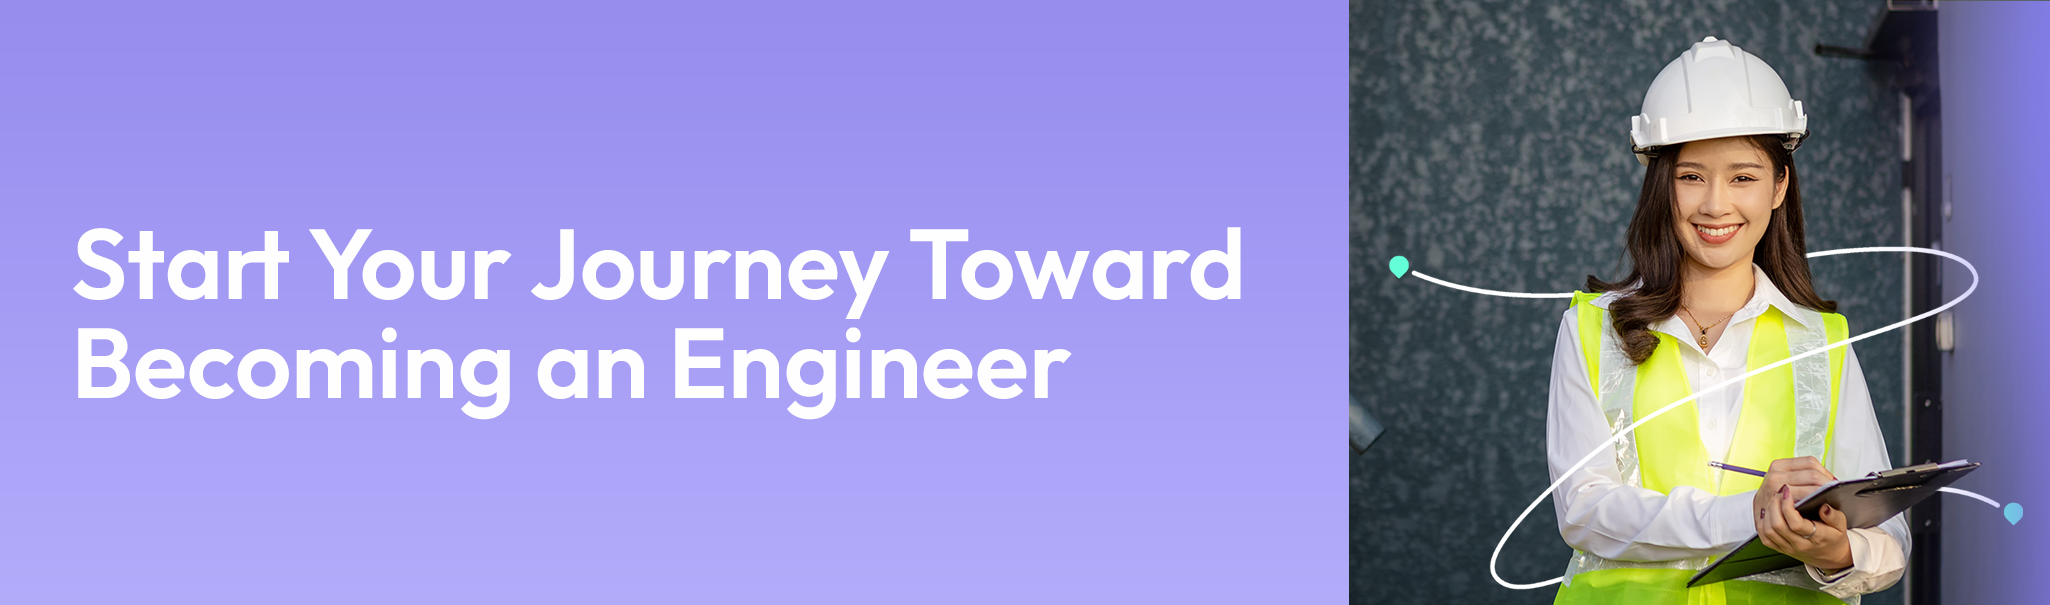 career-guide_engineer Engineer Jobs - Career Guide